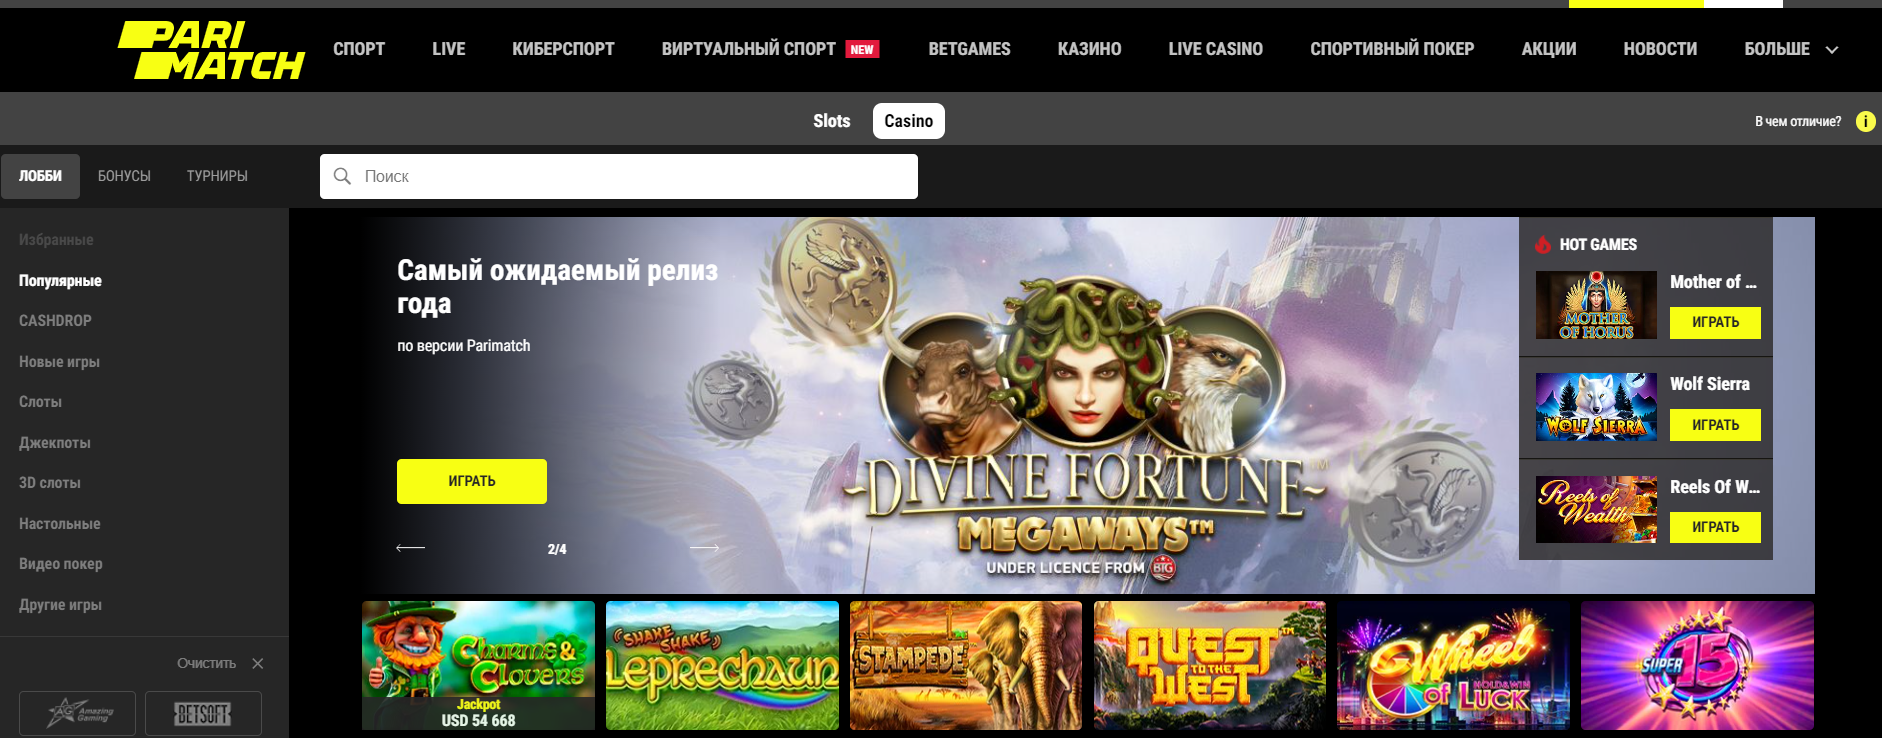 Париматч казино официальный сайт варвара казино